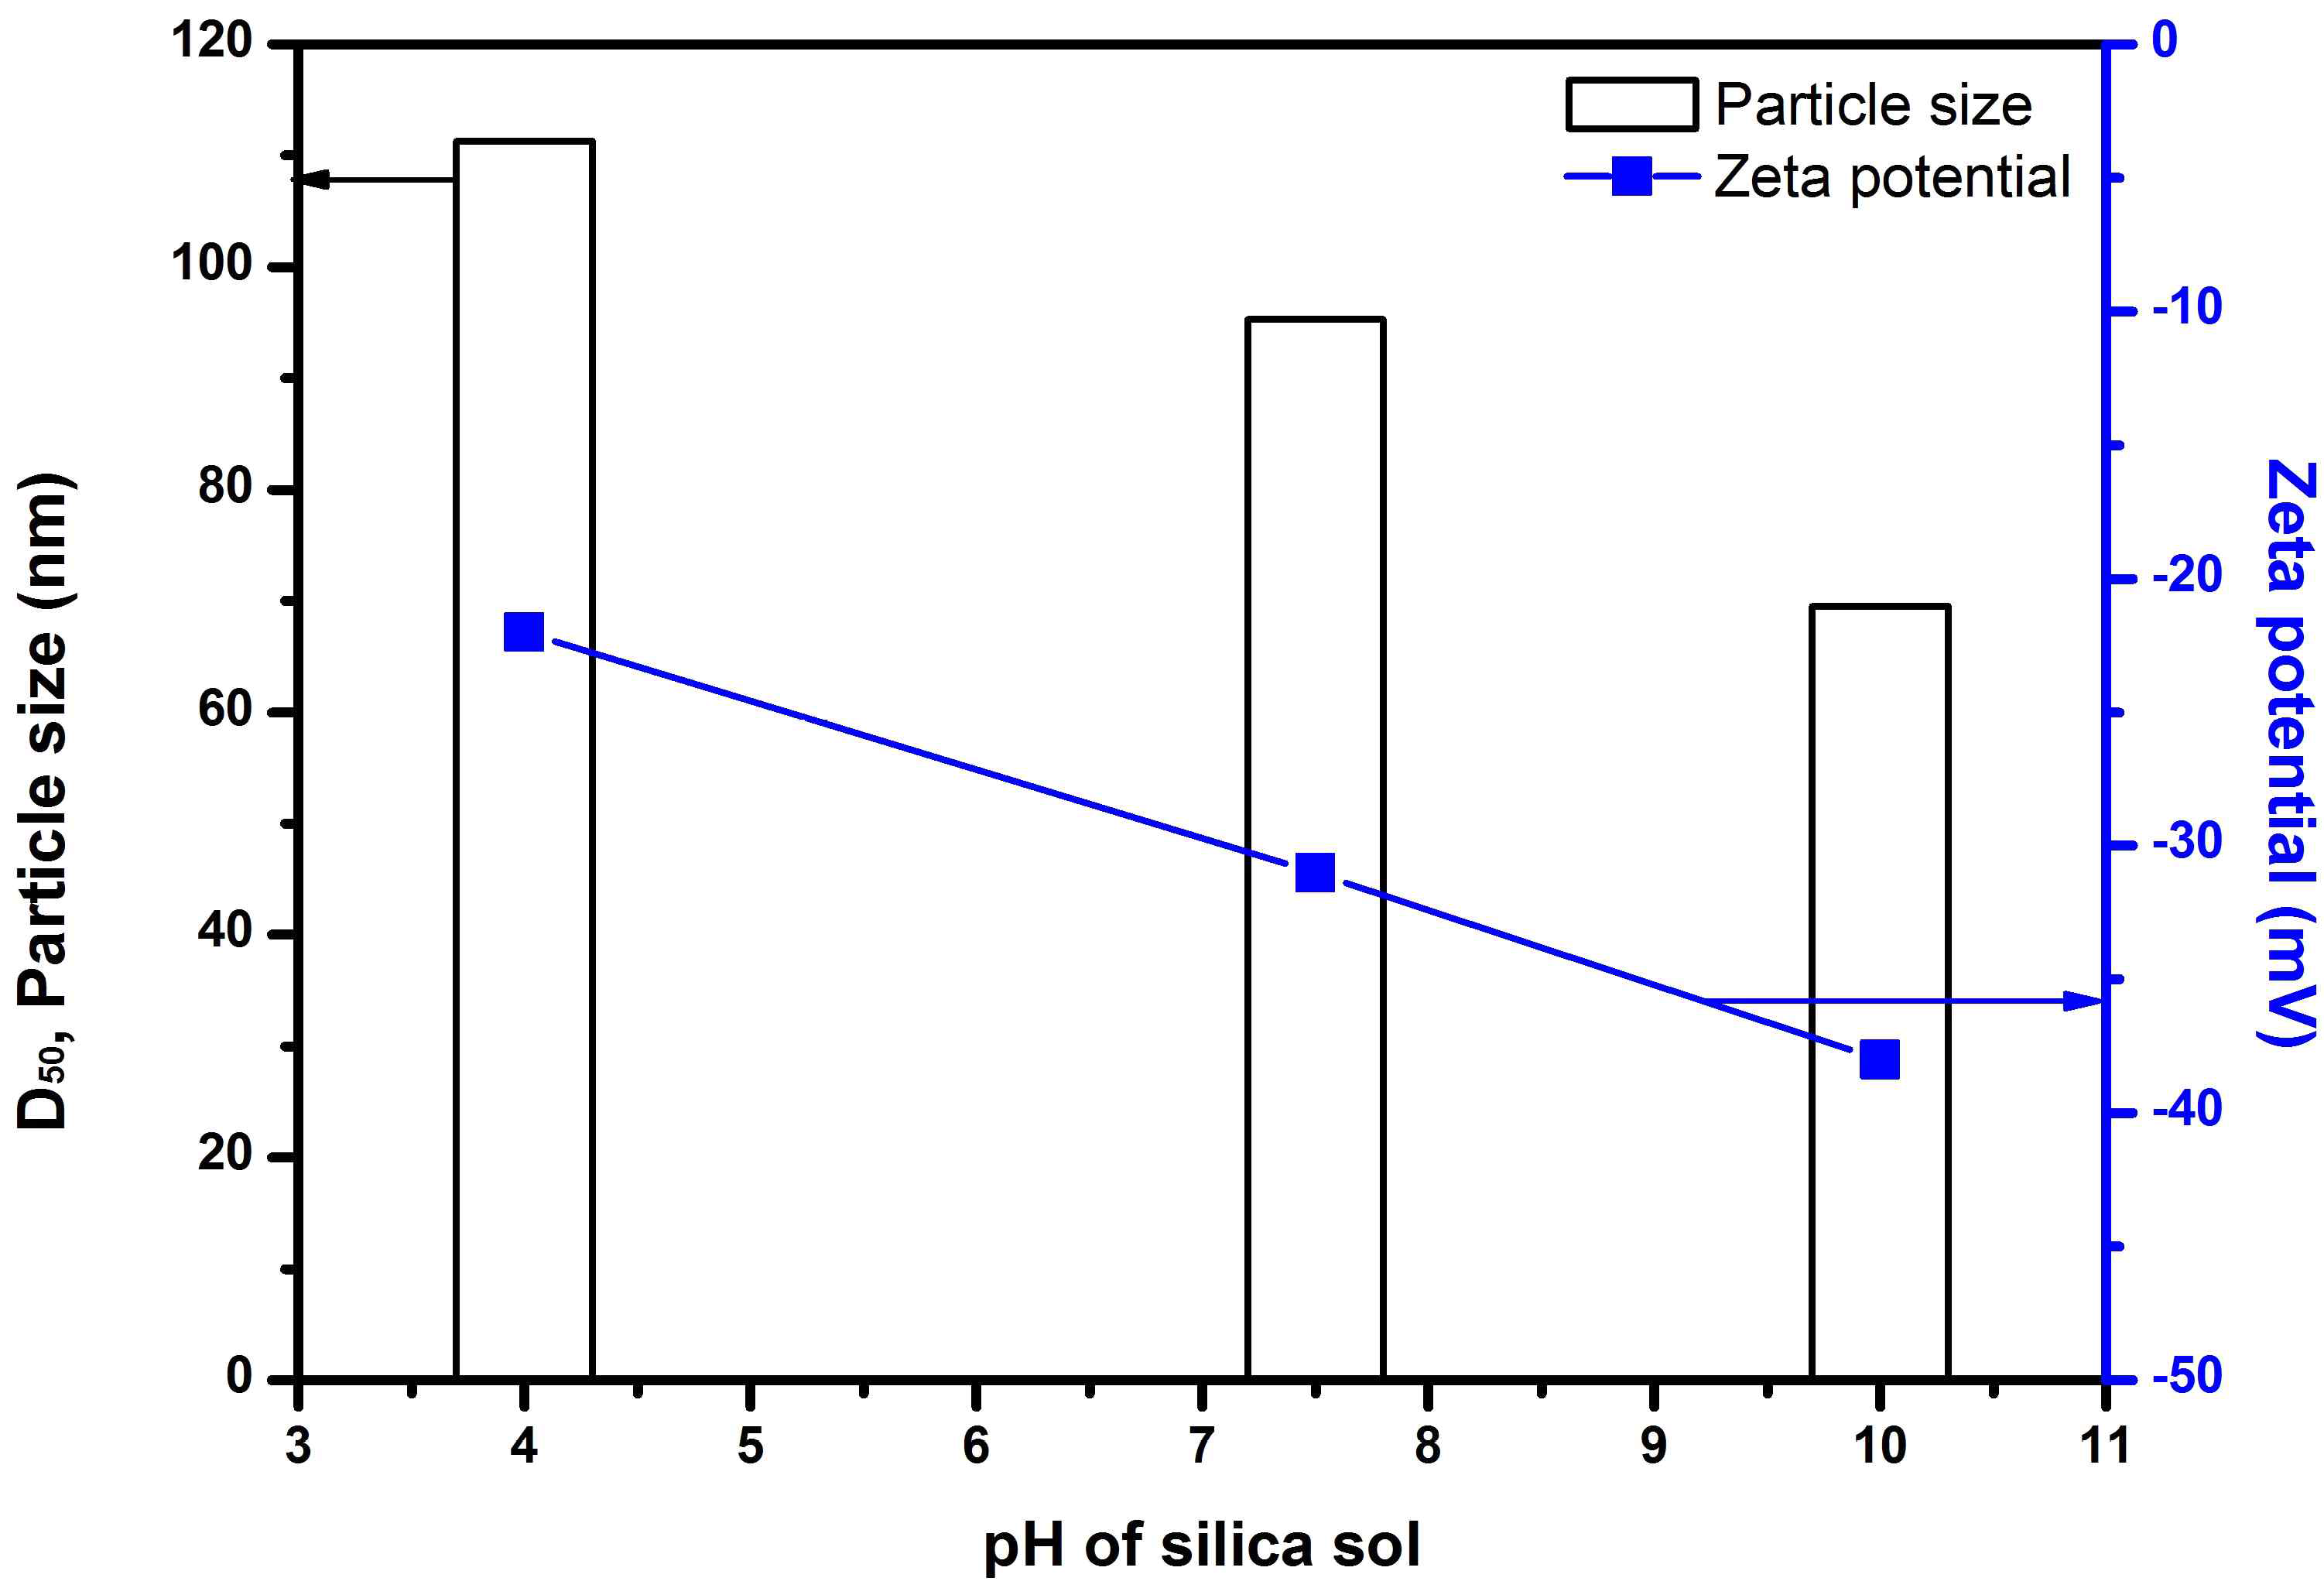 배치식 비드밀로 pH에 따라 밀링 후에 얻어진 SiO2 졸의 입도(D50) 및 제타전위 그래프